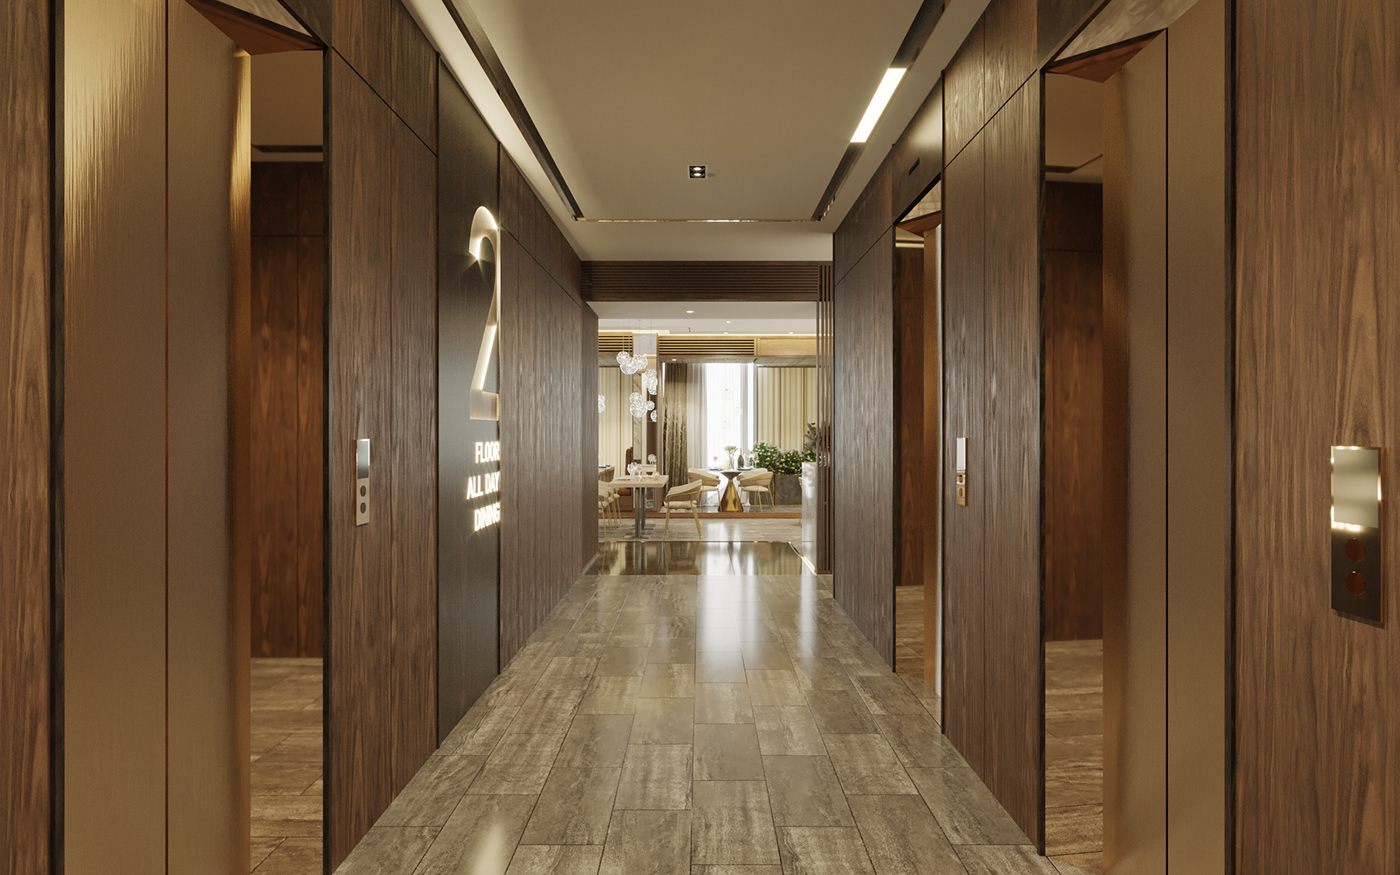 3ds max architecture corona Interior interior design  modern Render visualization